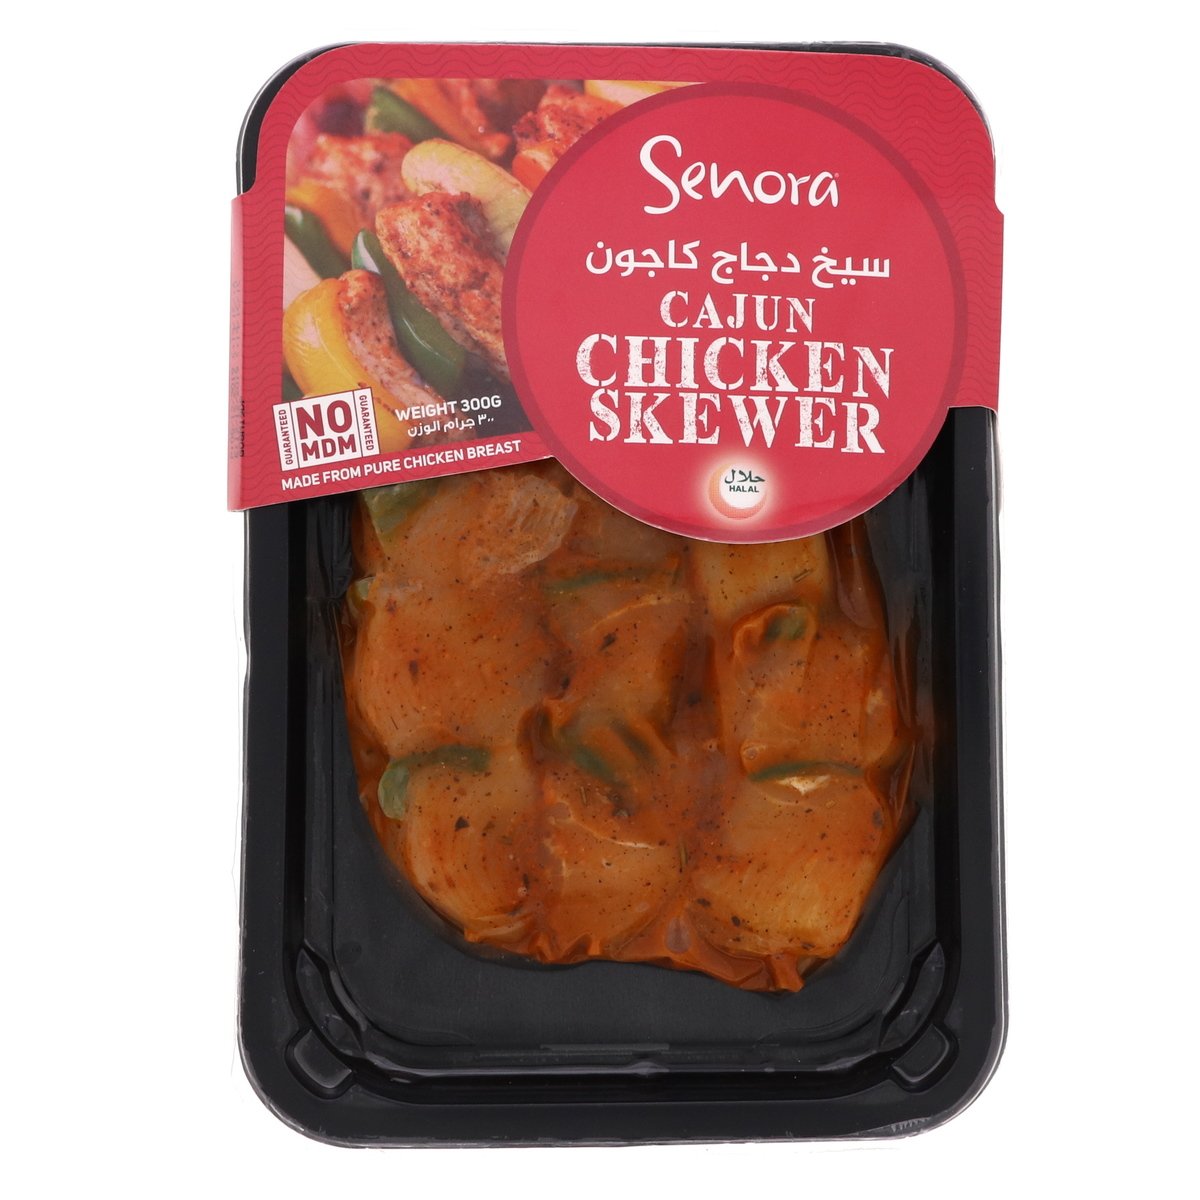 Senora Chicken Skewer Cajun 300 g